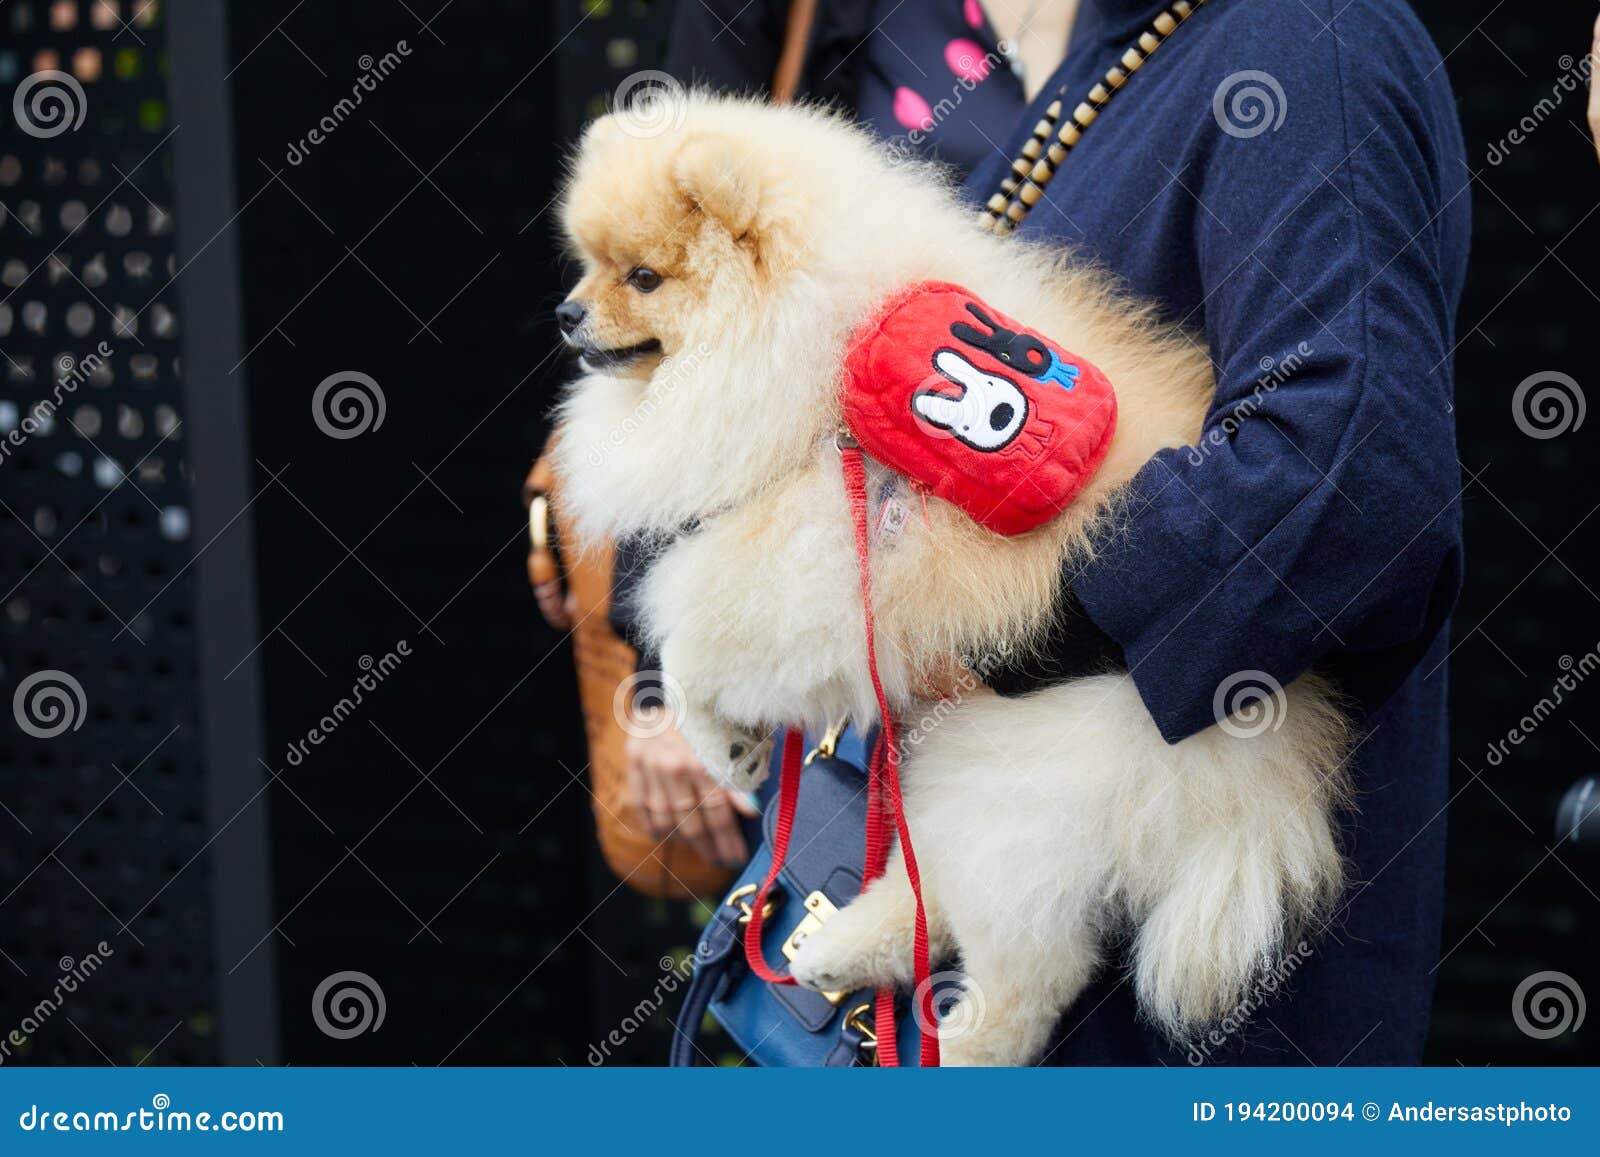 Frau Mit Pomeranian Hund Mit Rotem Rucksack Vor Gucci-Modeschaumailand-Modewoche Stockbild - Bild von jacke, redaktionell: 194200094